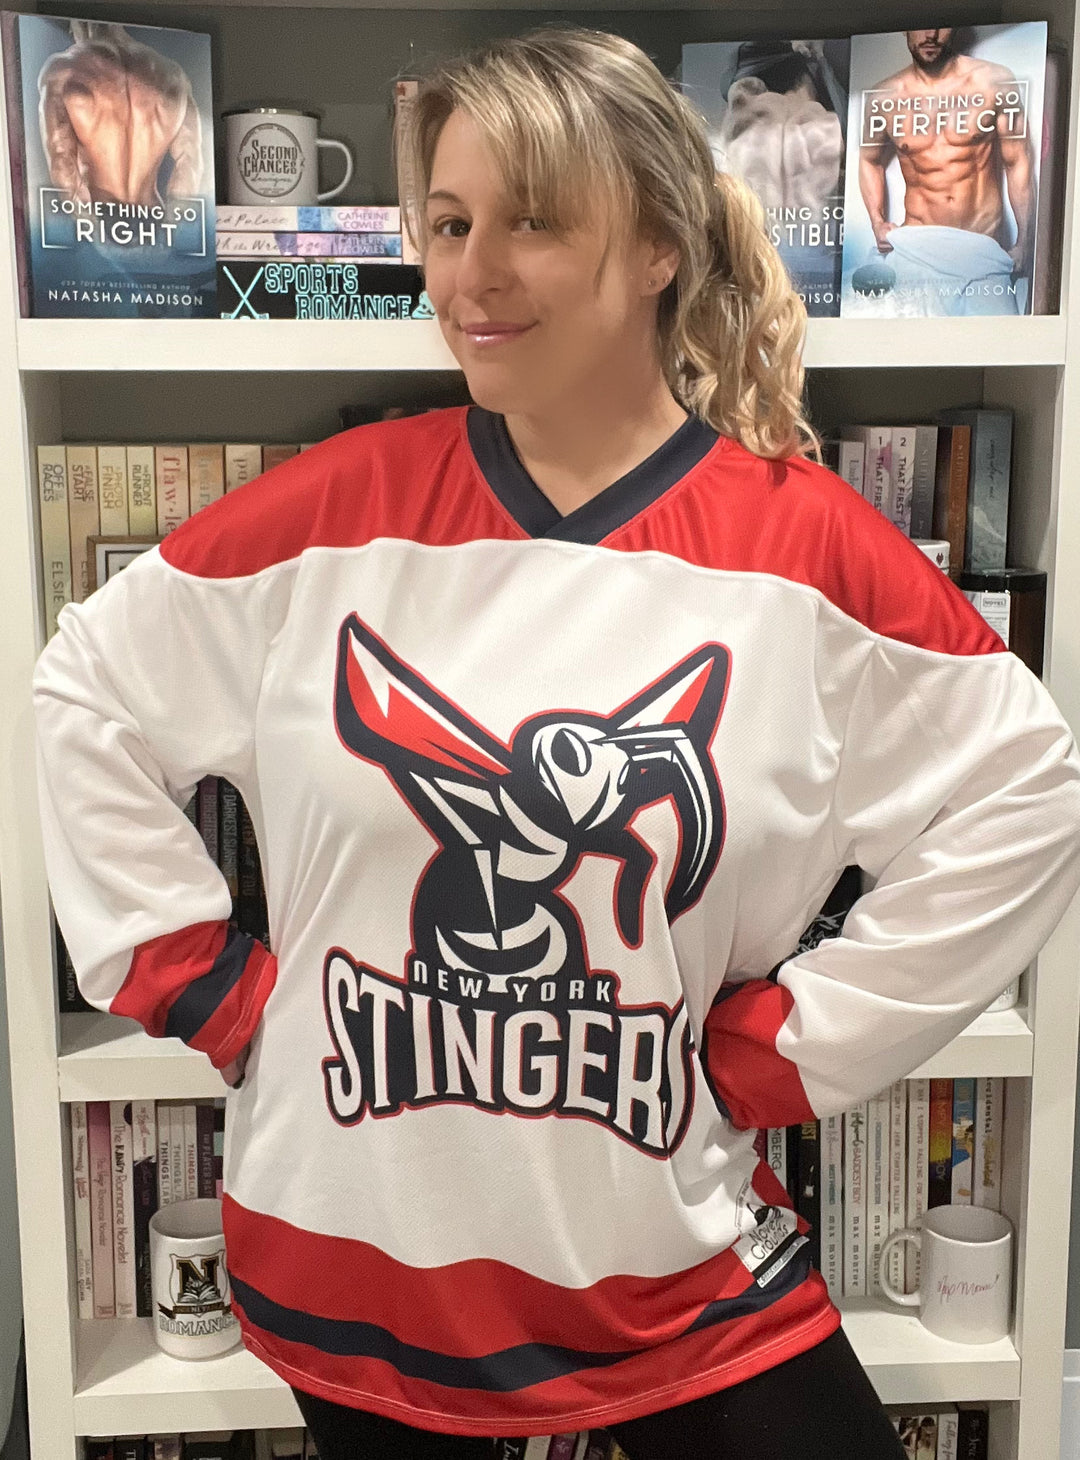 Natasha Madison - New York Stingers Recycled Hockey Fan Jersey